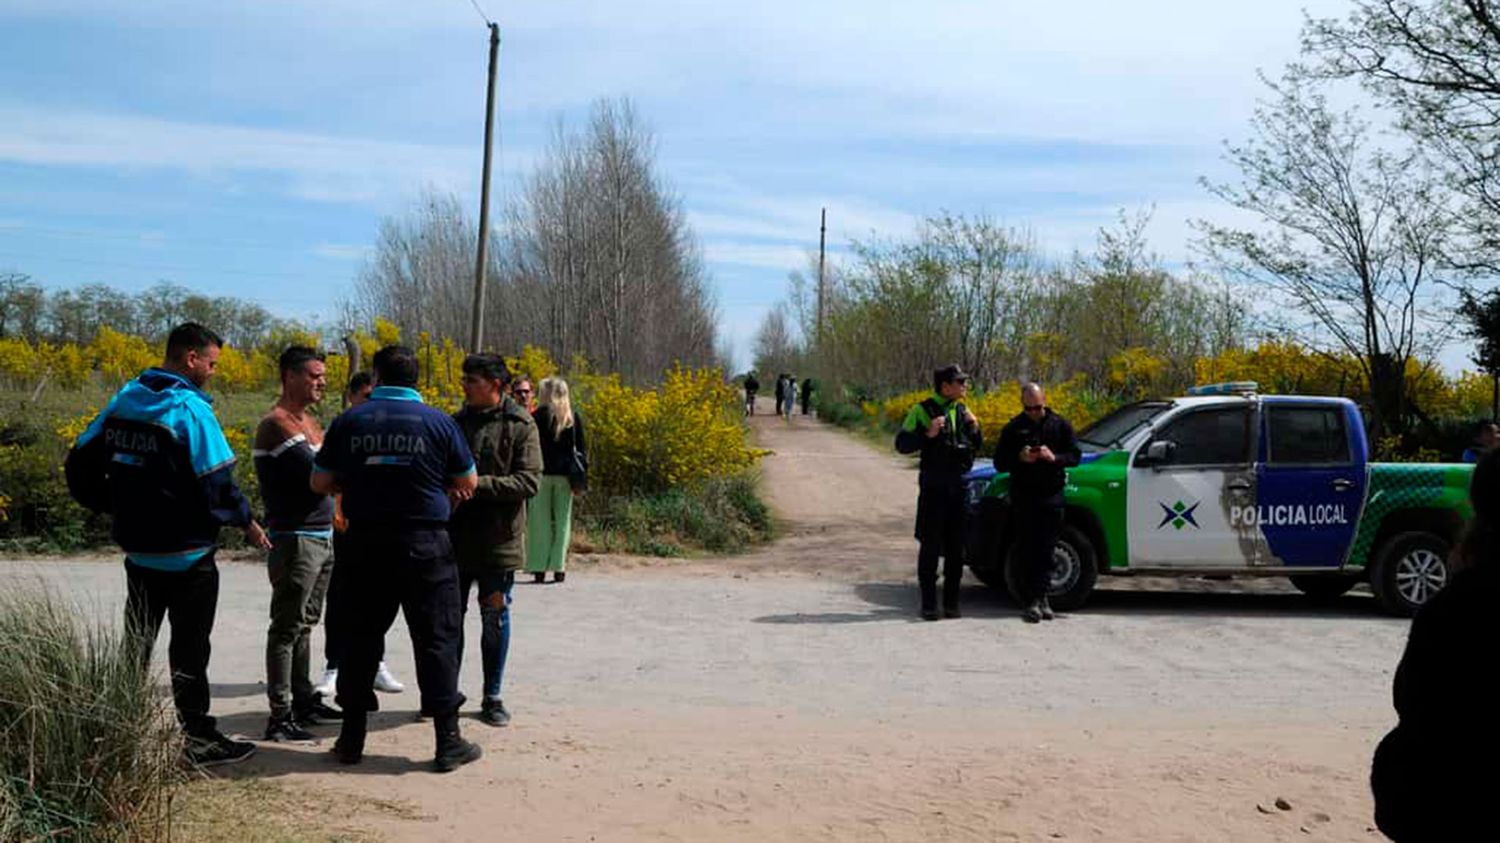 Giro en la causa por el asesinato de un joven en Tandil: Sospechan del cuñado, que está prófugo